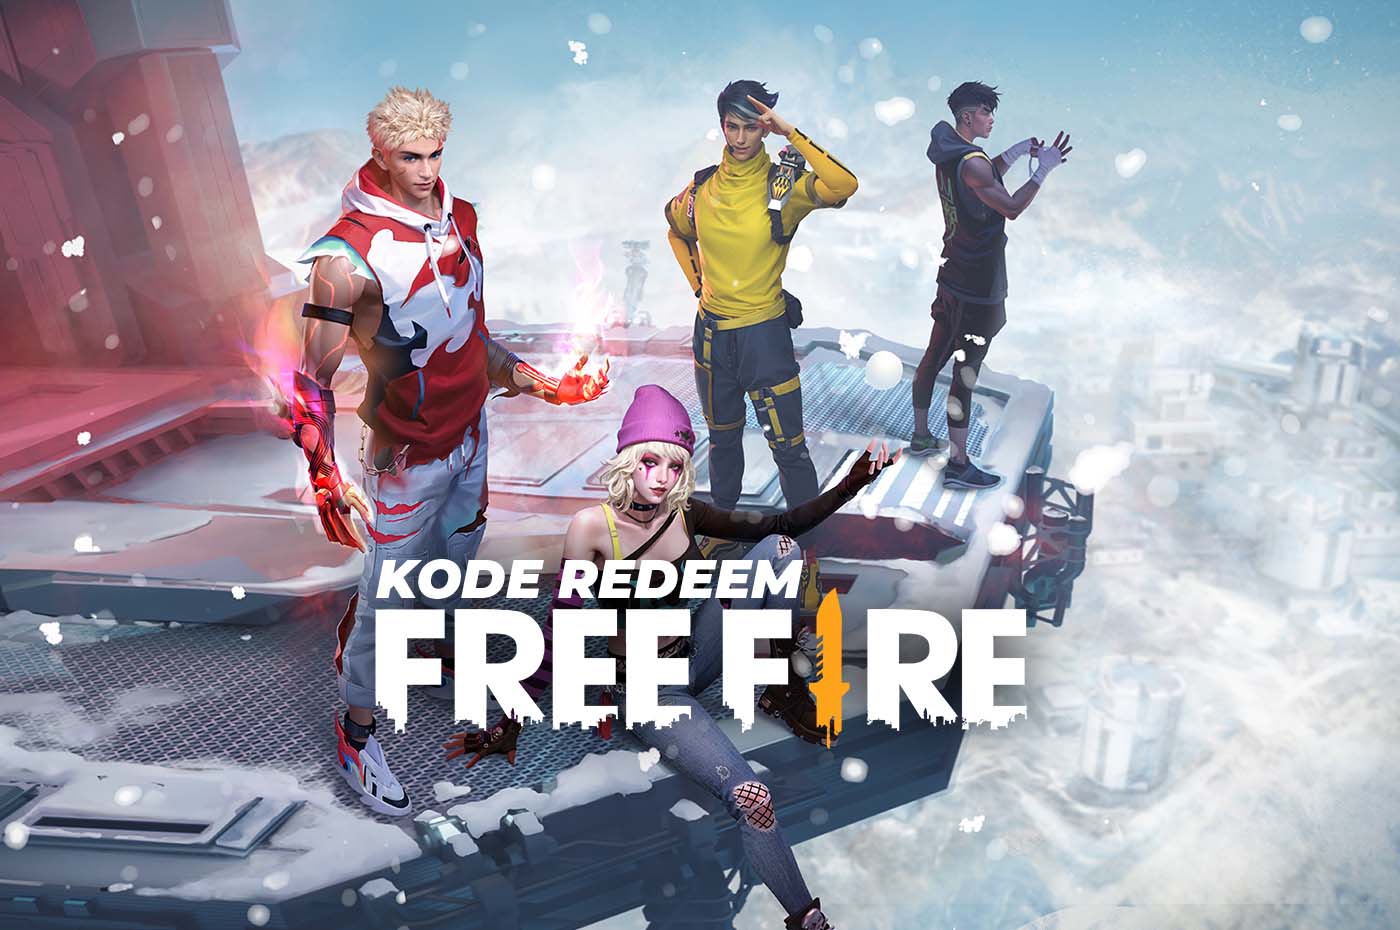 Update Terbaru Kode Redeem FF Free Fire November 2023, Klaim Sekarang dan Dapatkan Hadiahnya